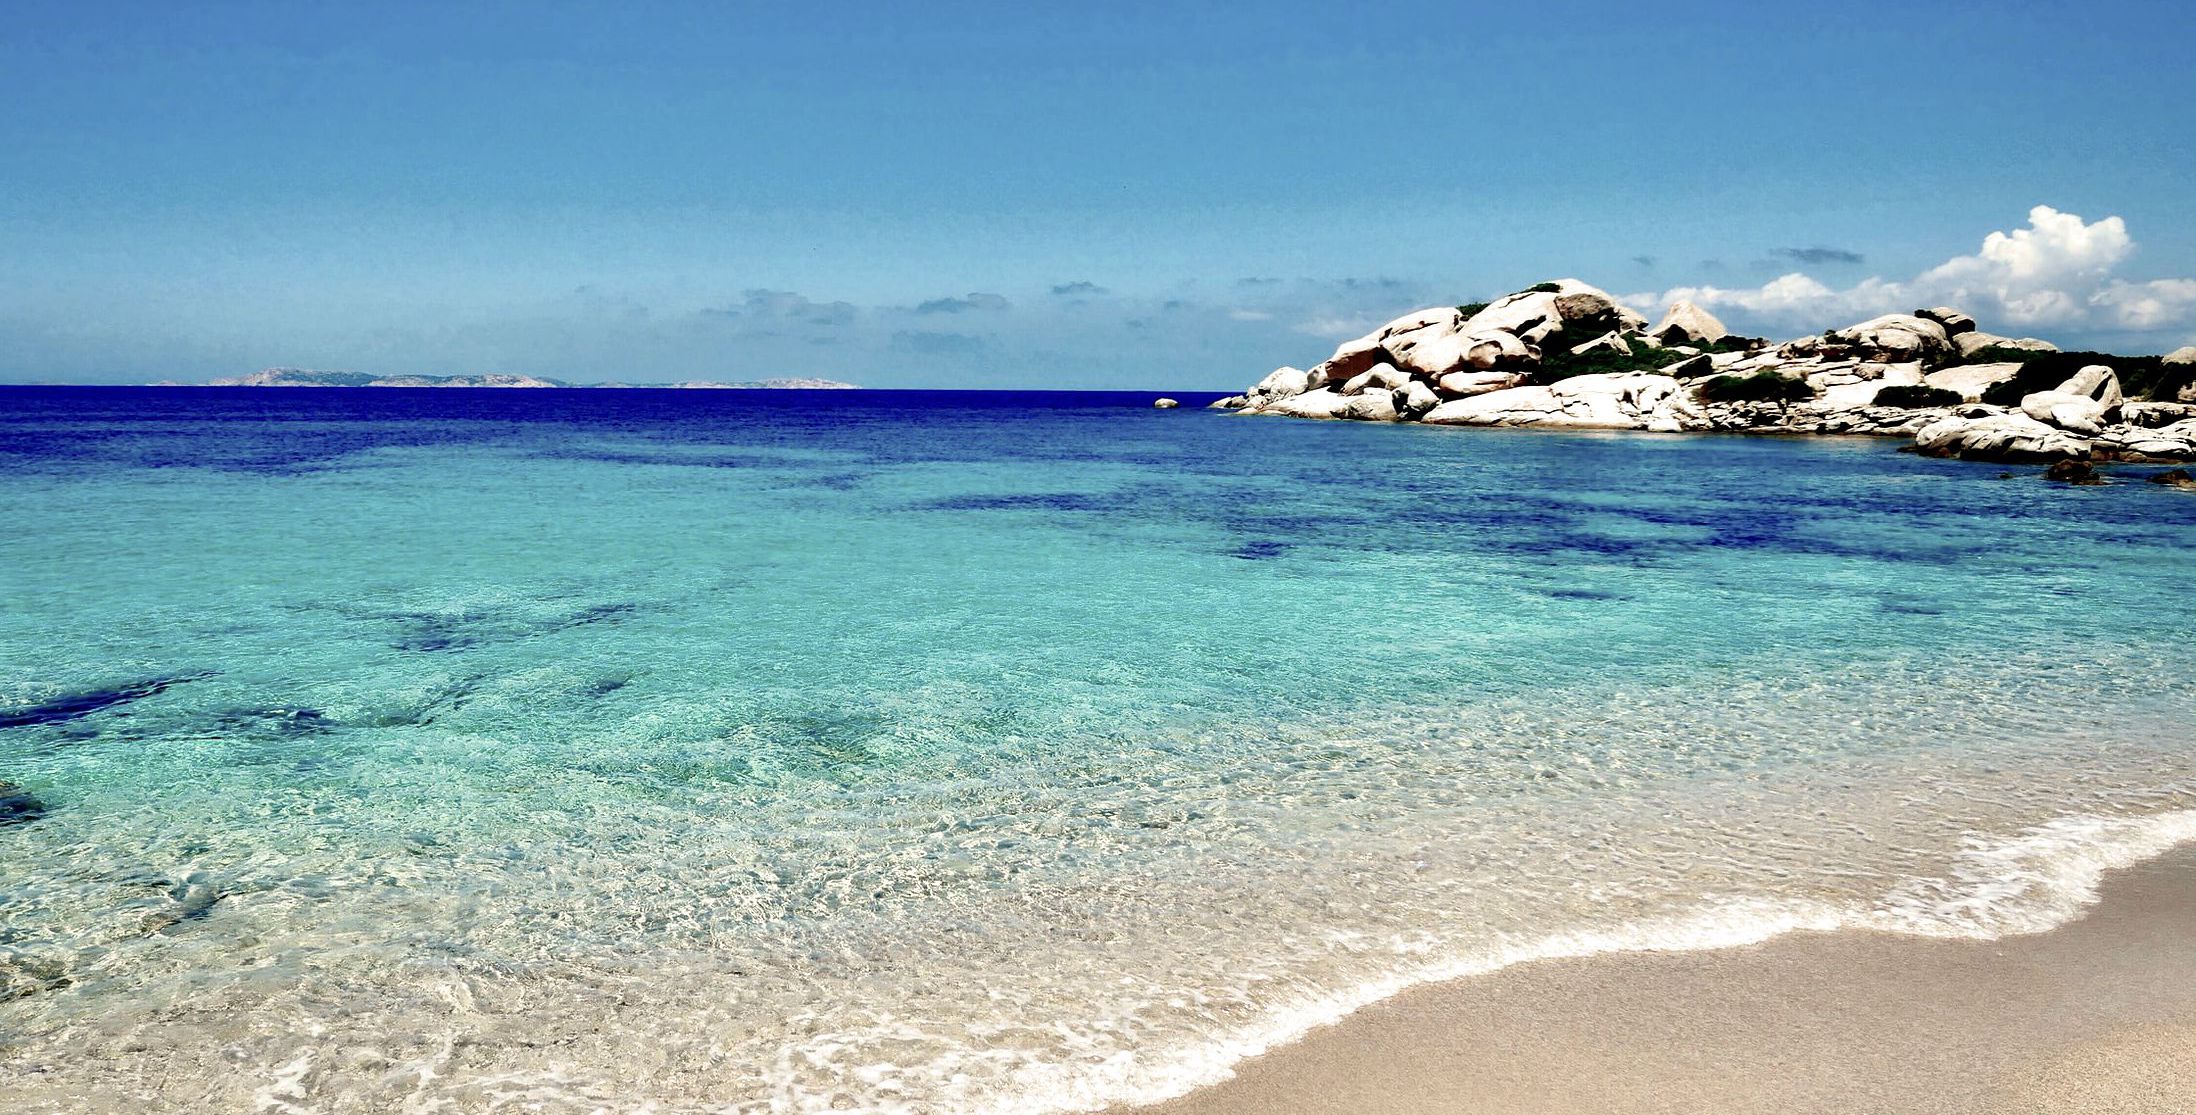 Wonderful Sardinia